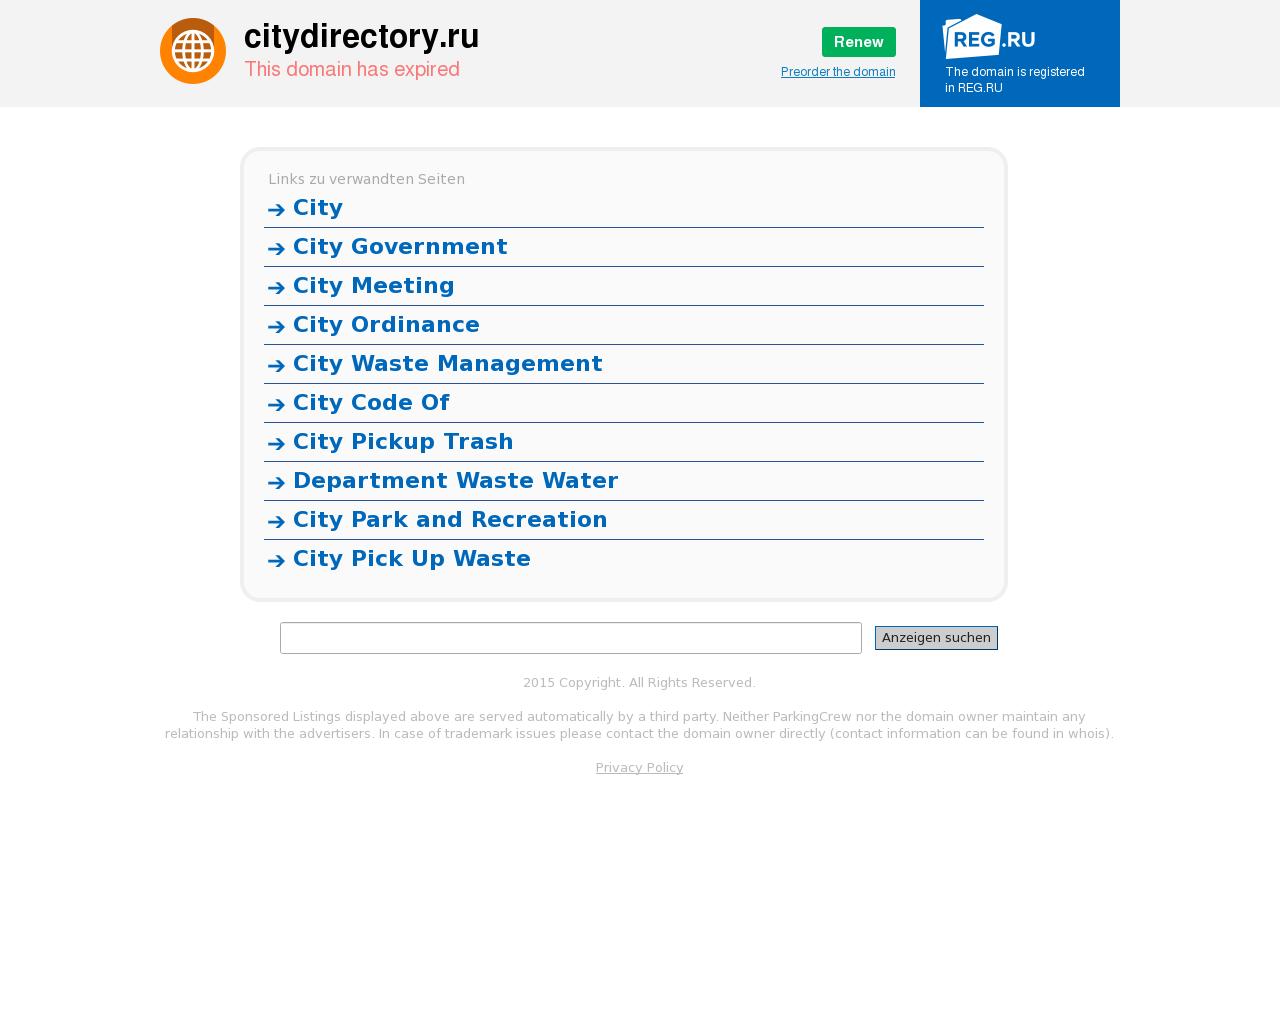 Изображение сайта citydirectory.ru в разрешении 1280x1024